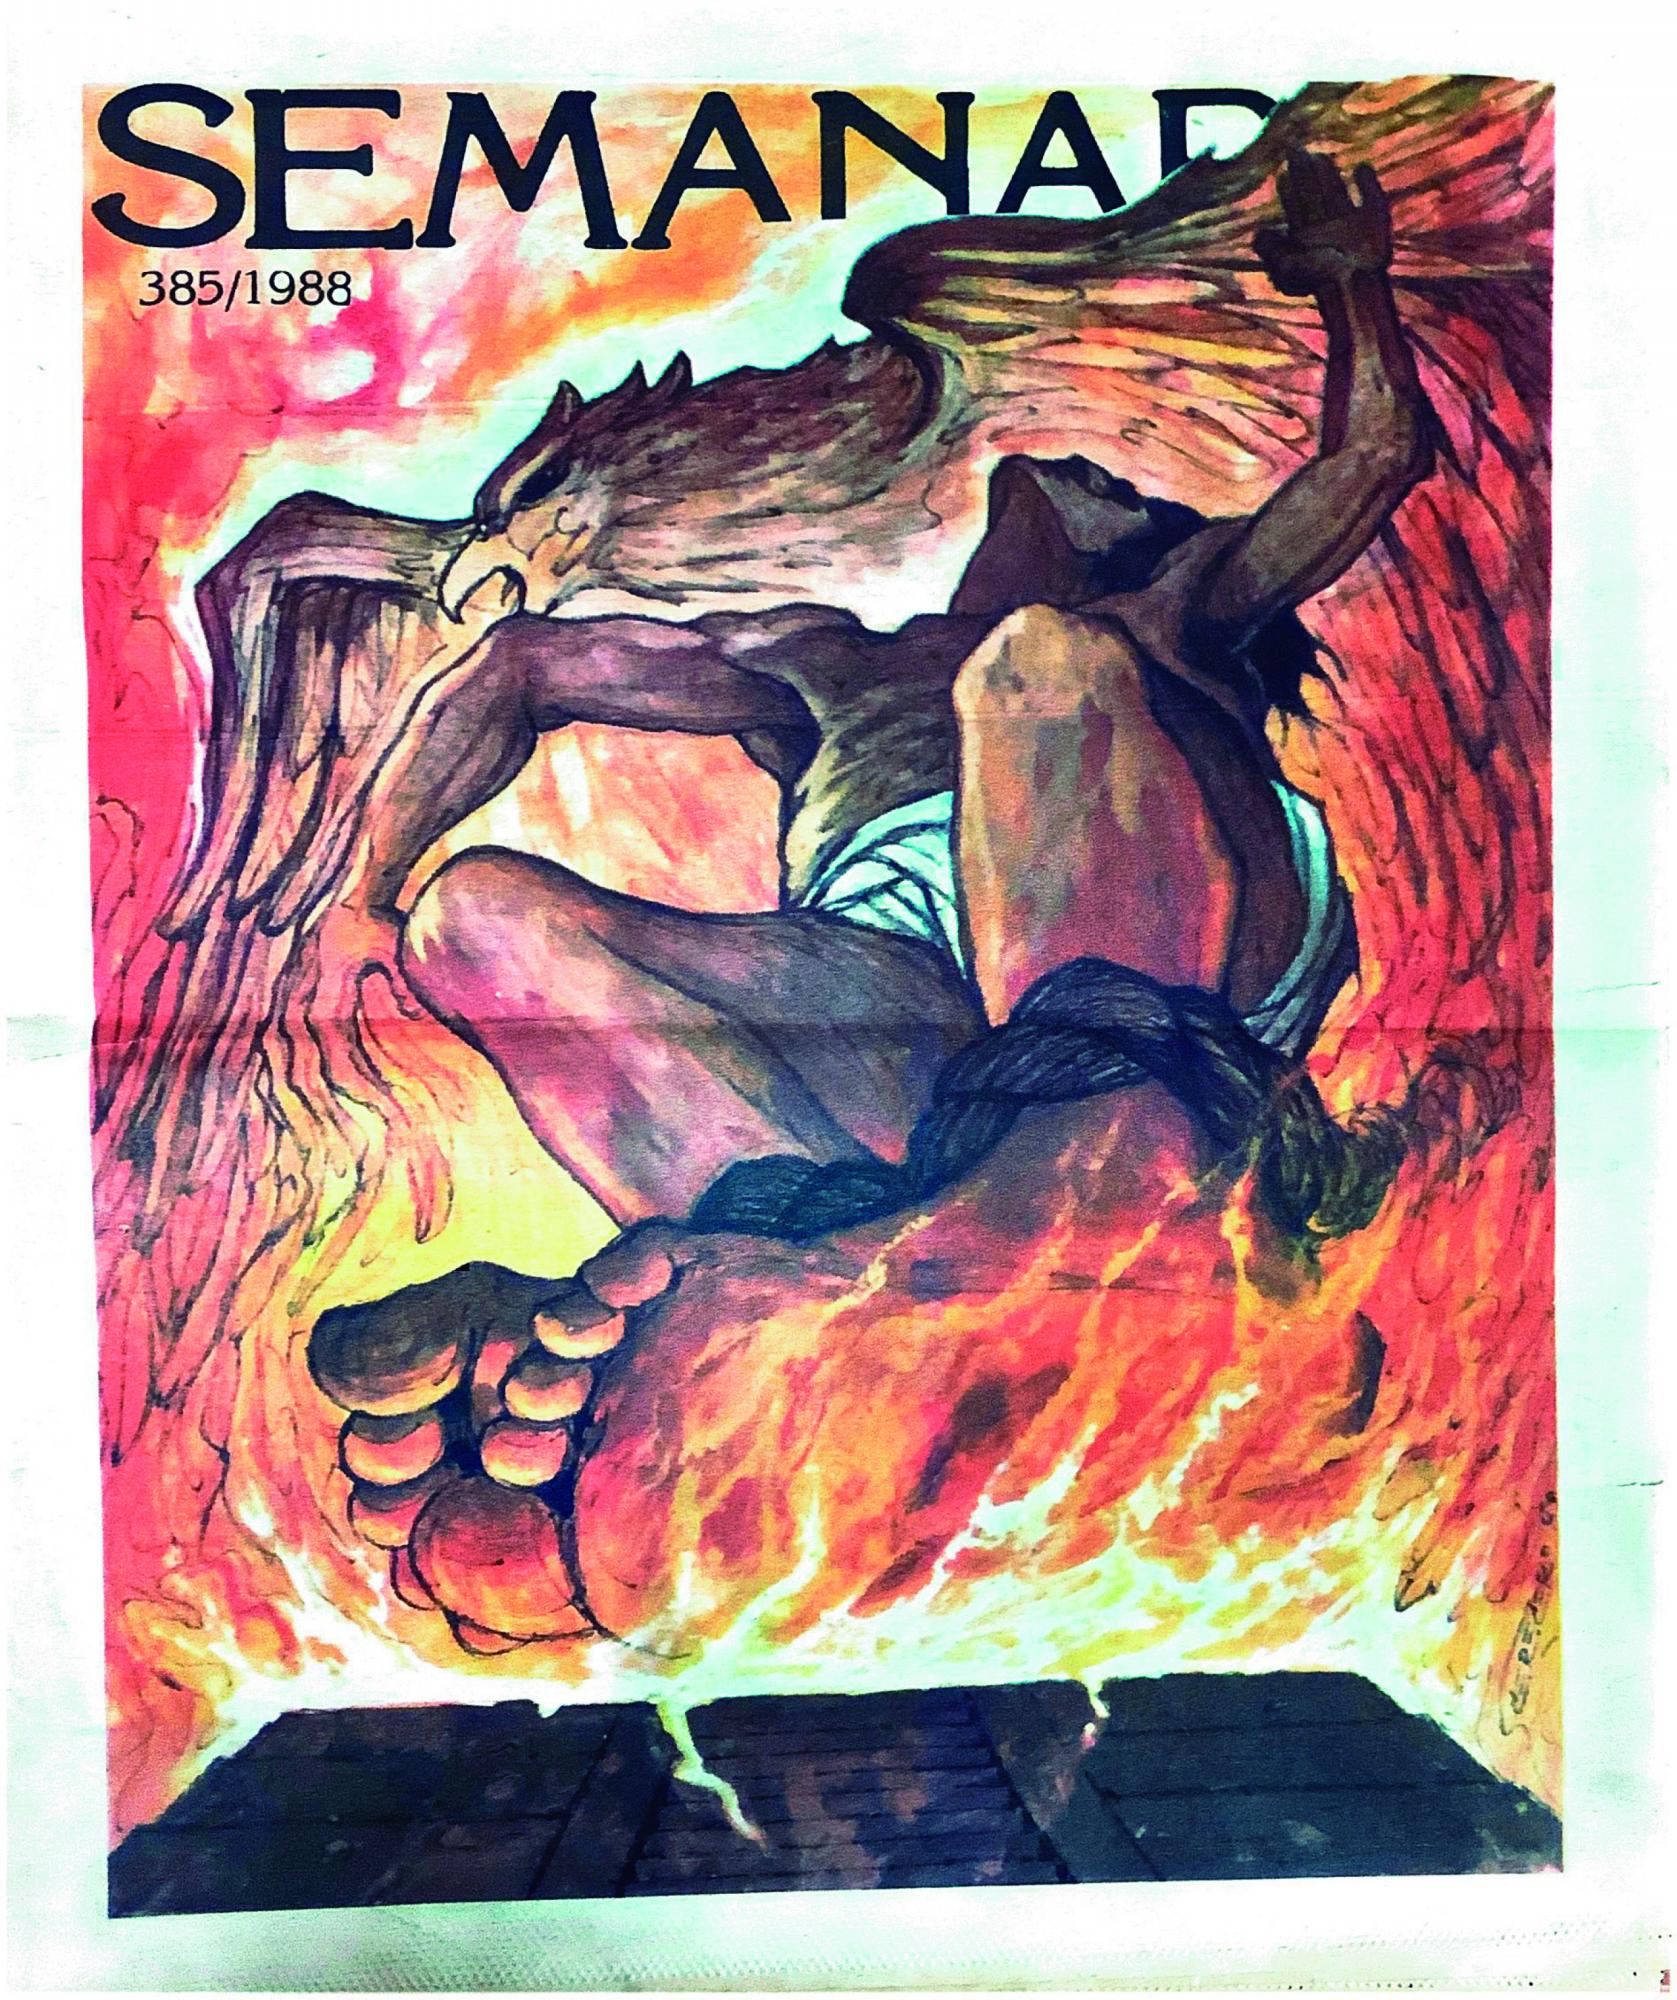 $!El particular y potente estilo de Cerecero ilustró las portadas de Semanario durante los 80’s y 90’s.